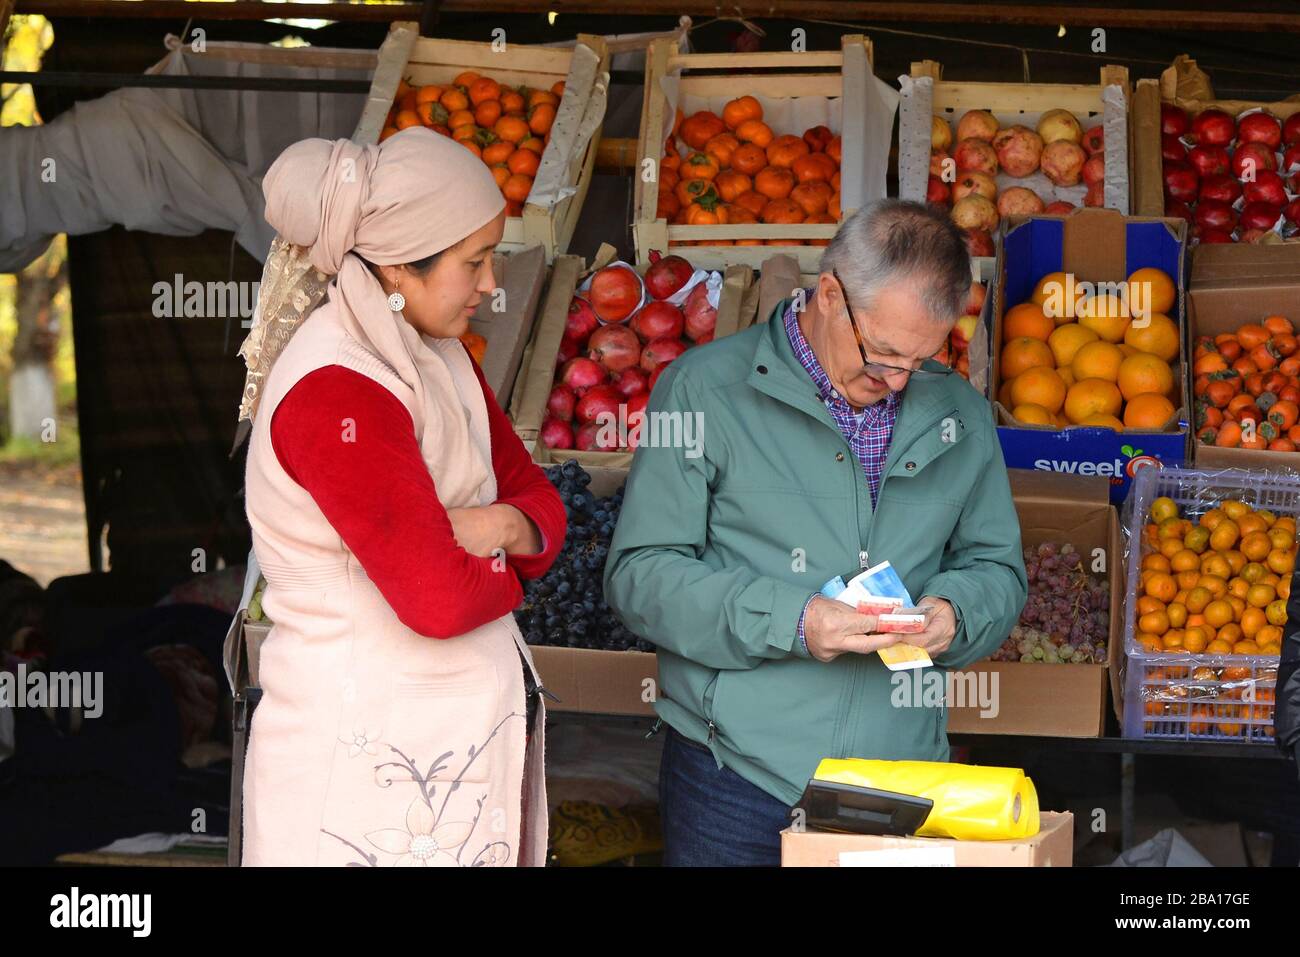 Venditore locale che vende frutta e verdura fresca in un mercato in stallo sulla strada Bishkek, Kirghizistan. Turista scegliere la fattura/banconota locale corretta. Foto Stock